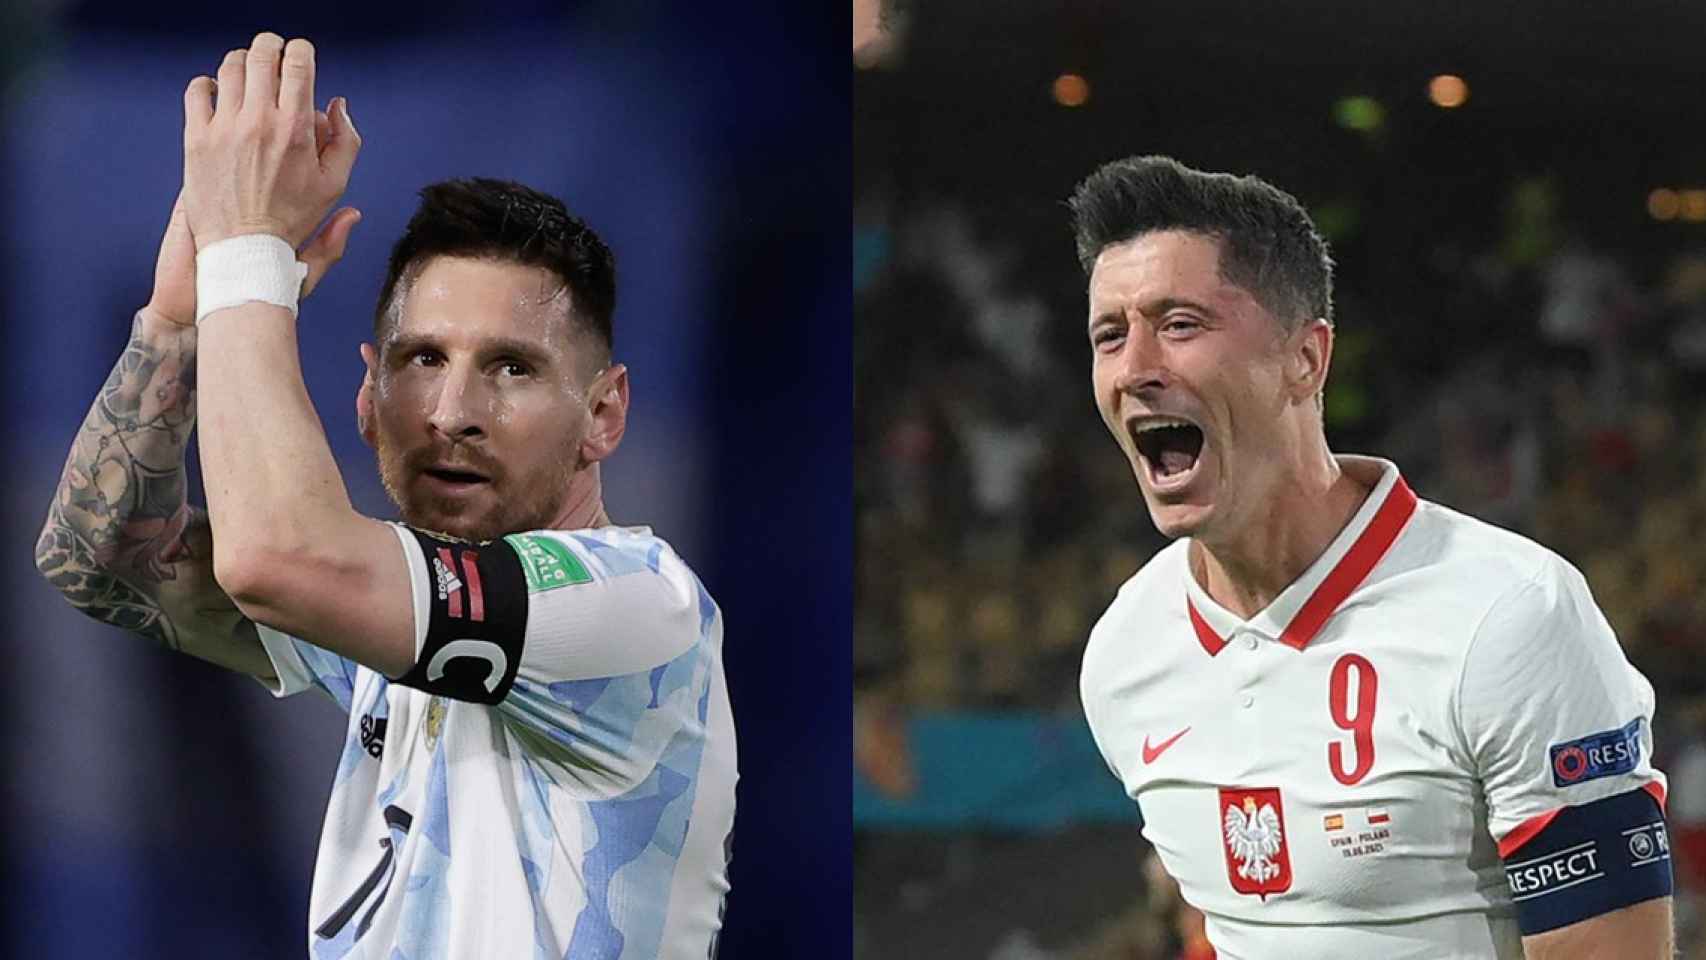 Messi y Lewandowski, capitanes de Argentina y Polonia, en un fotomontaje / Culemanía